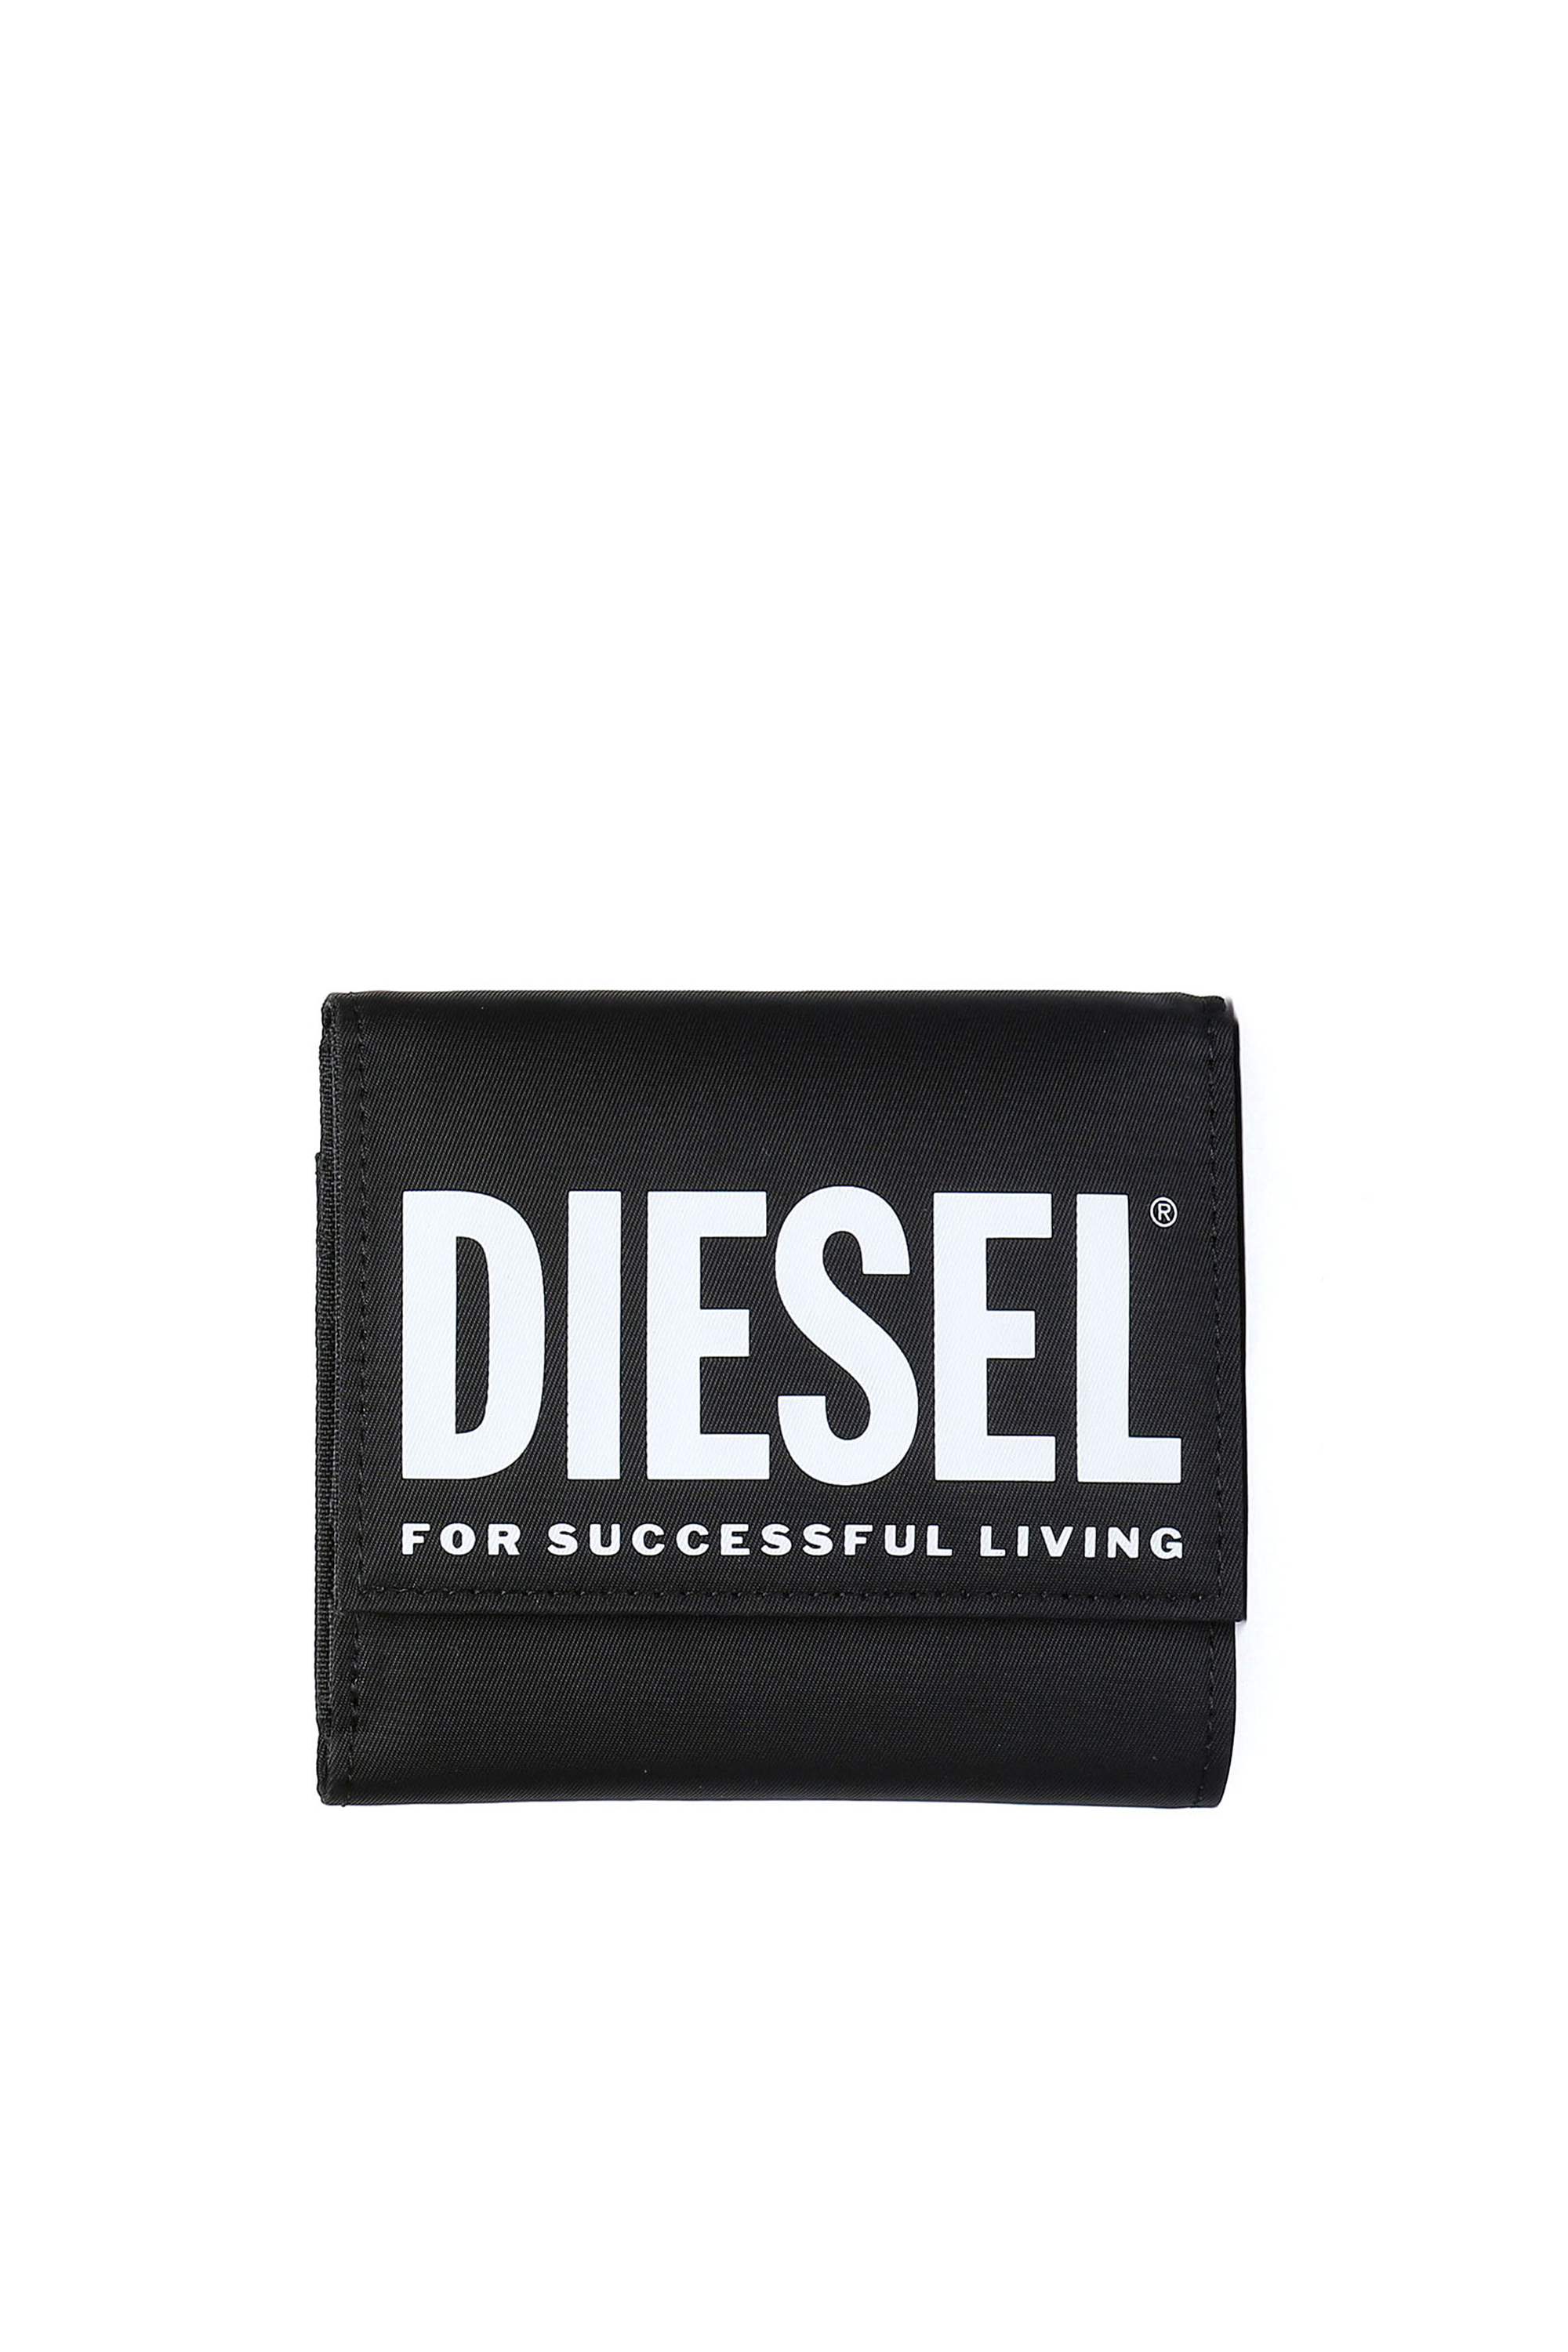 Diesel - YOSHINOBOLD, Black - Image 1